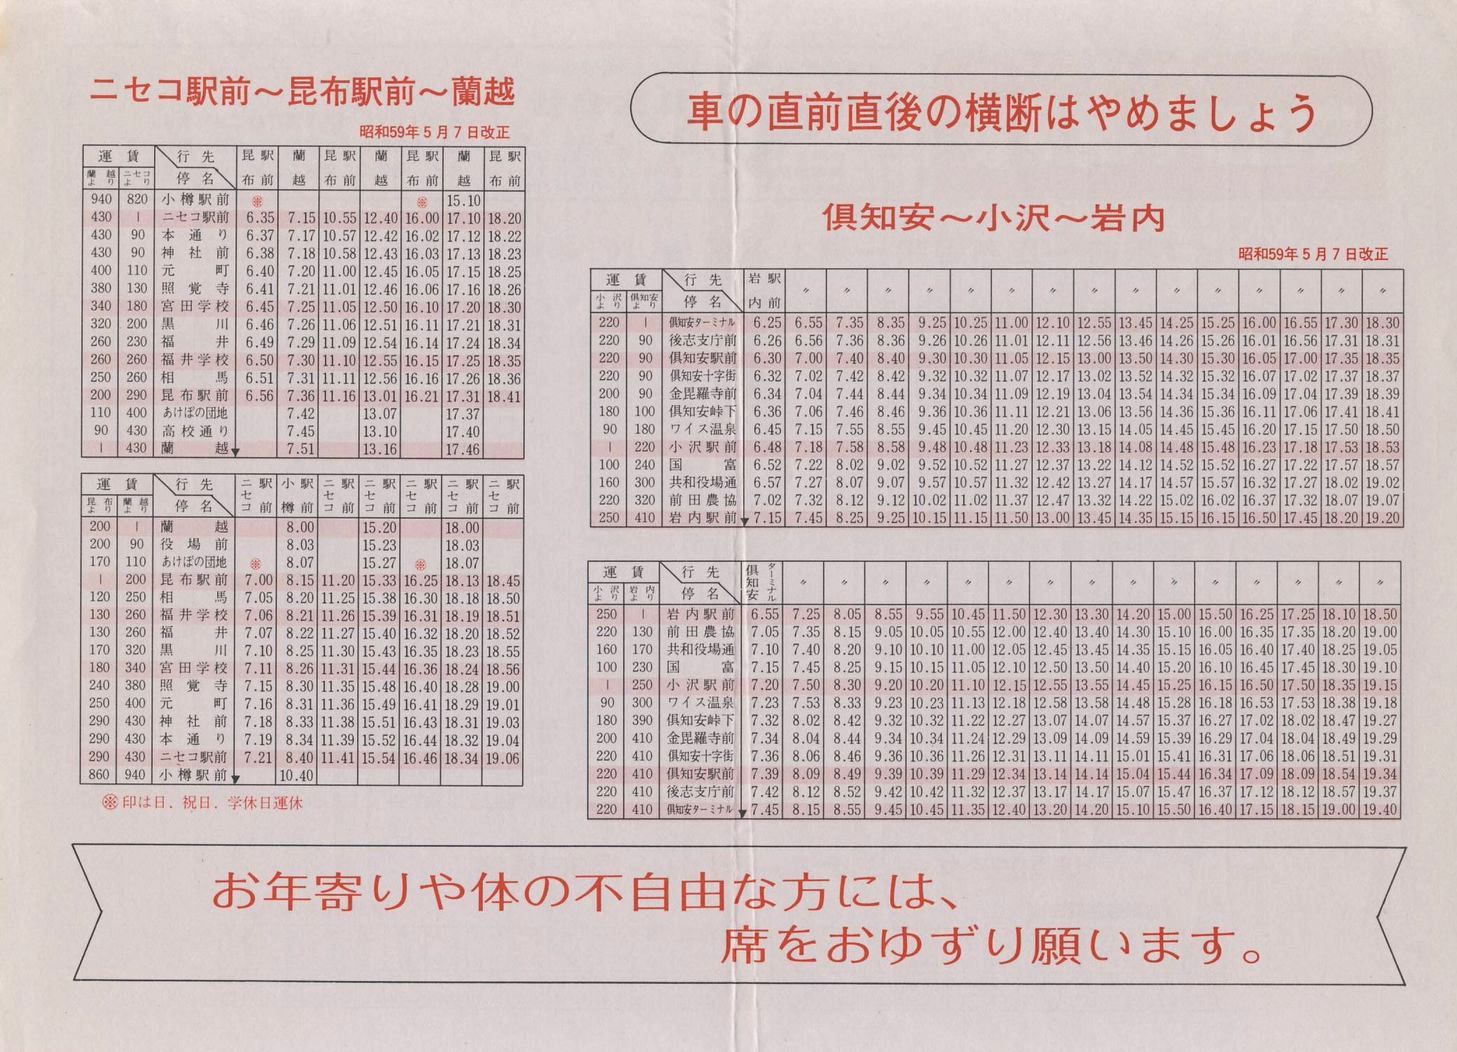 1984-06-10改正_ニセコバス_本社営業所管内時刻表裏面